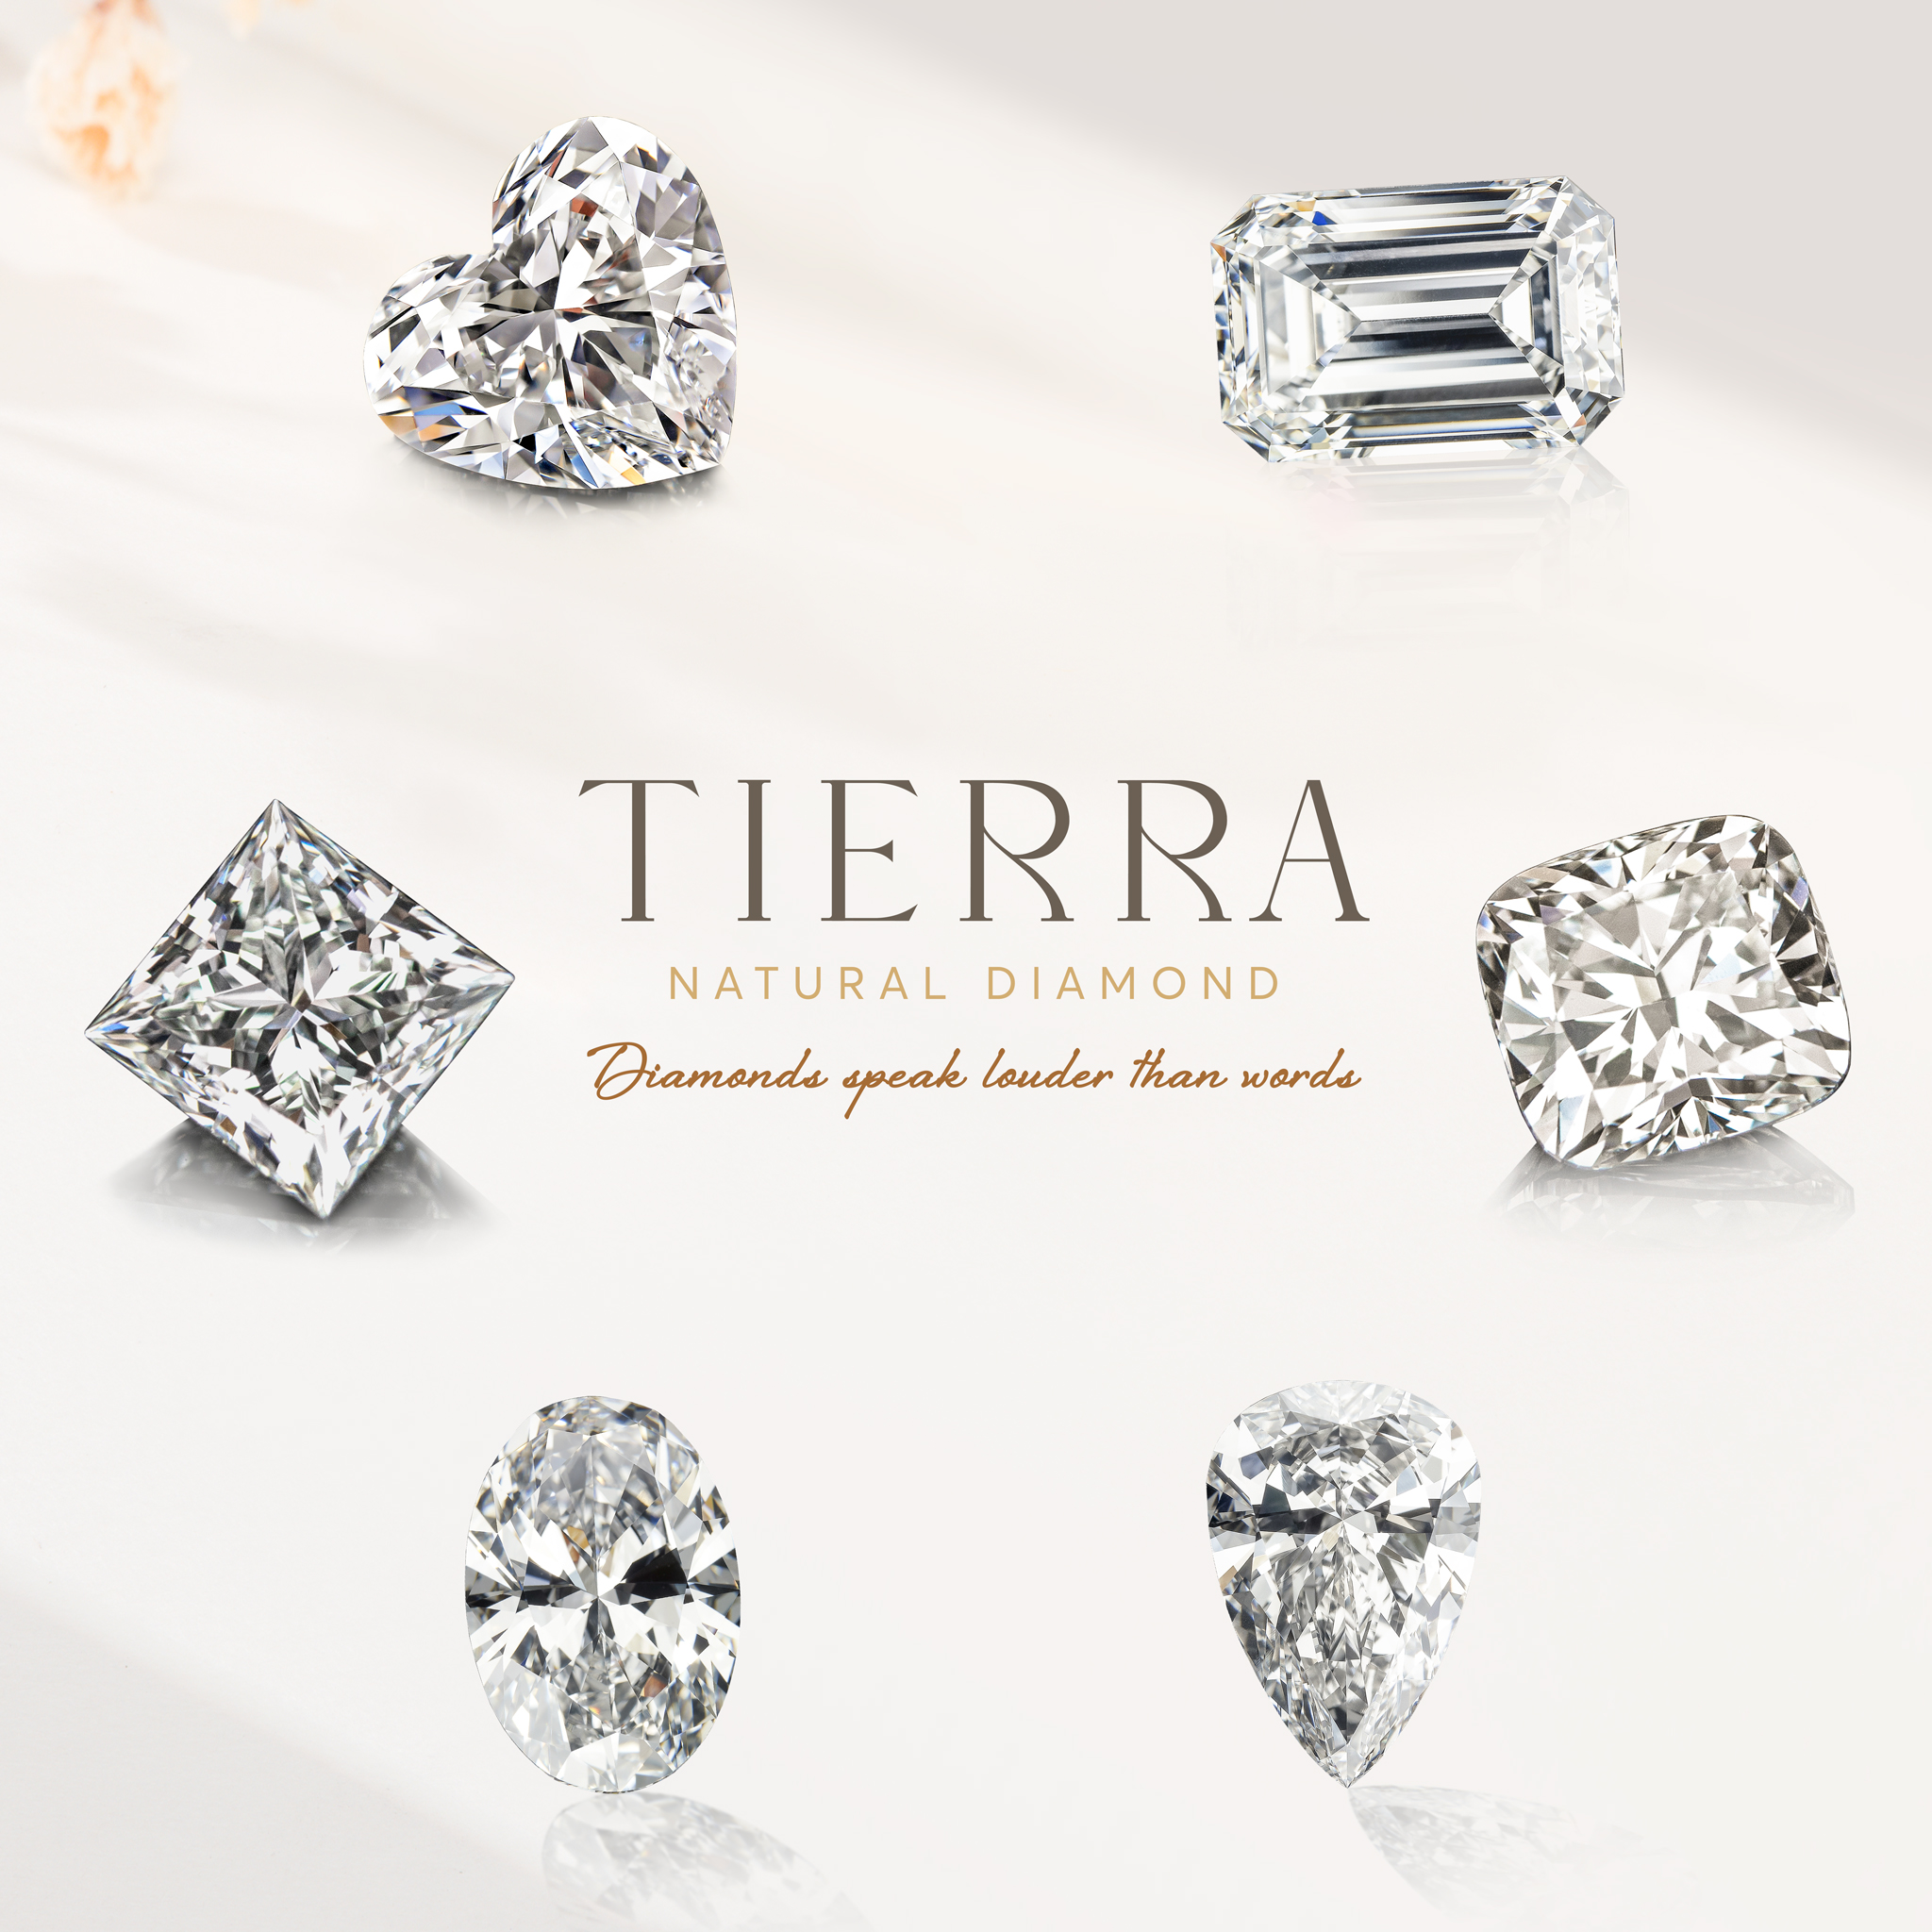 Bảng giá kim cương tại Tierra Diamond - Khẳng định giá cả luôn đi cùng